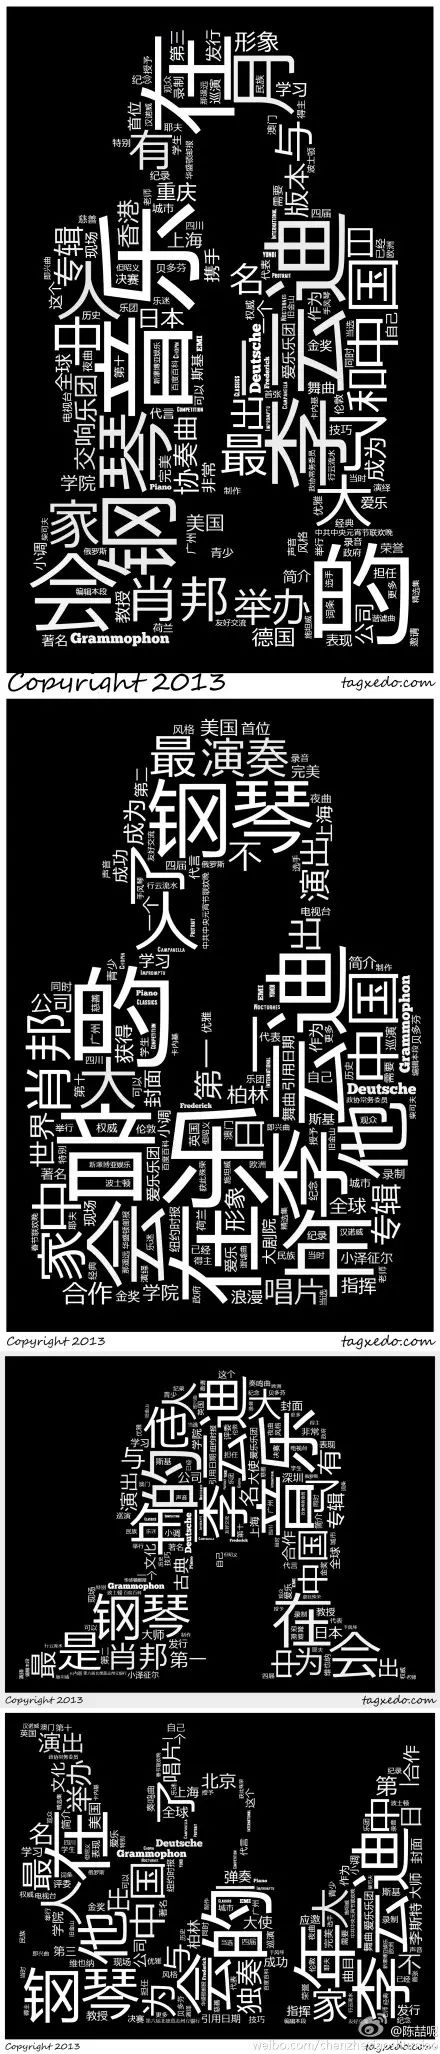 词云可视化：中文分词与词云制作